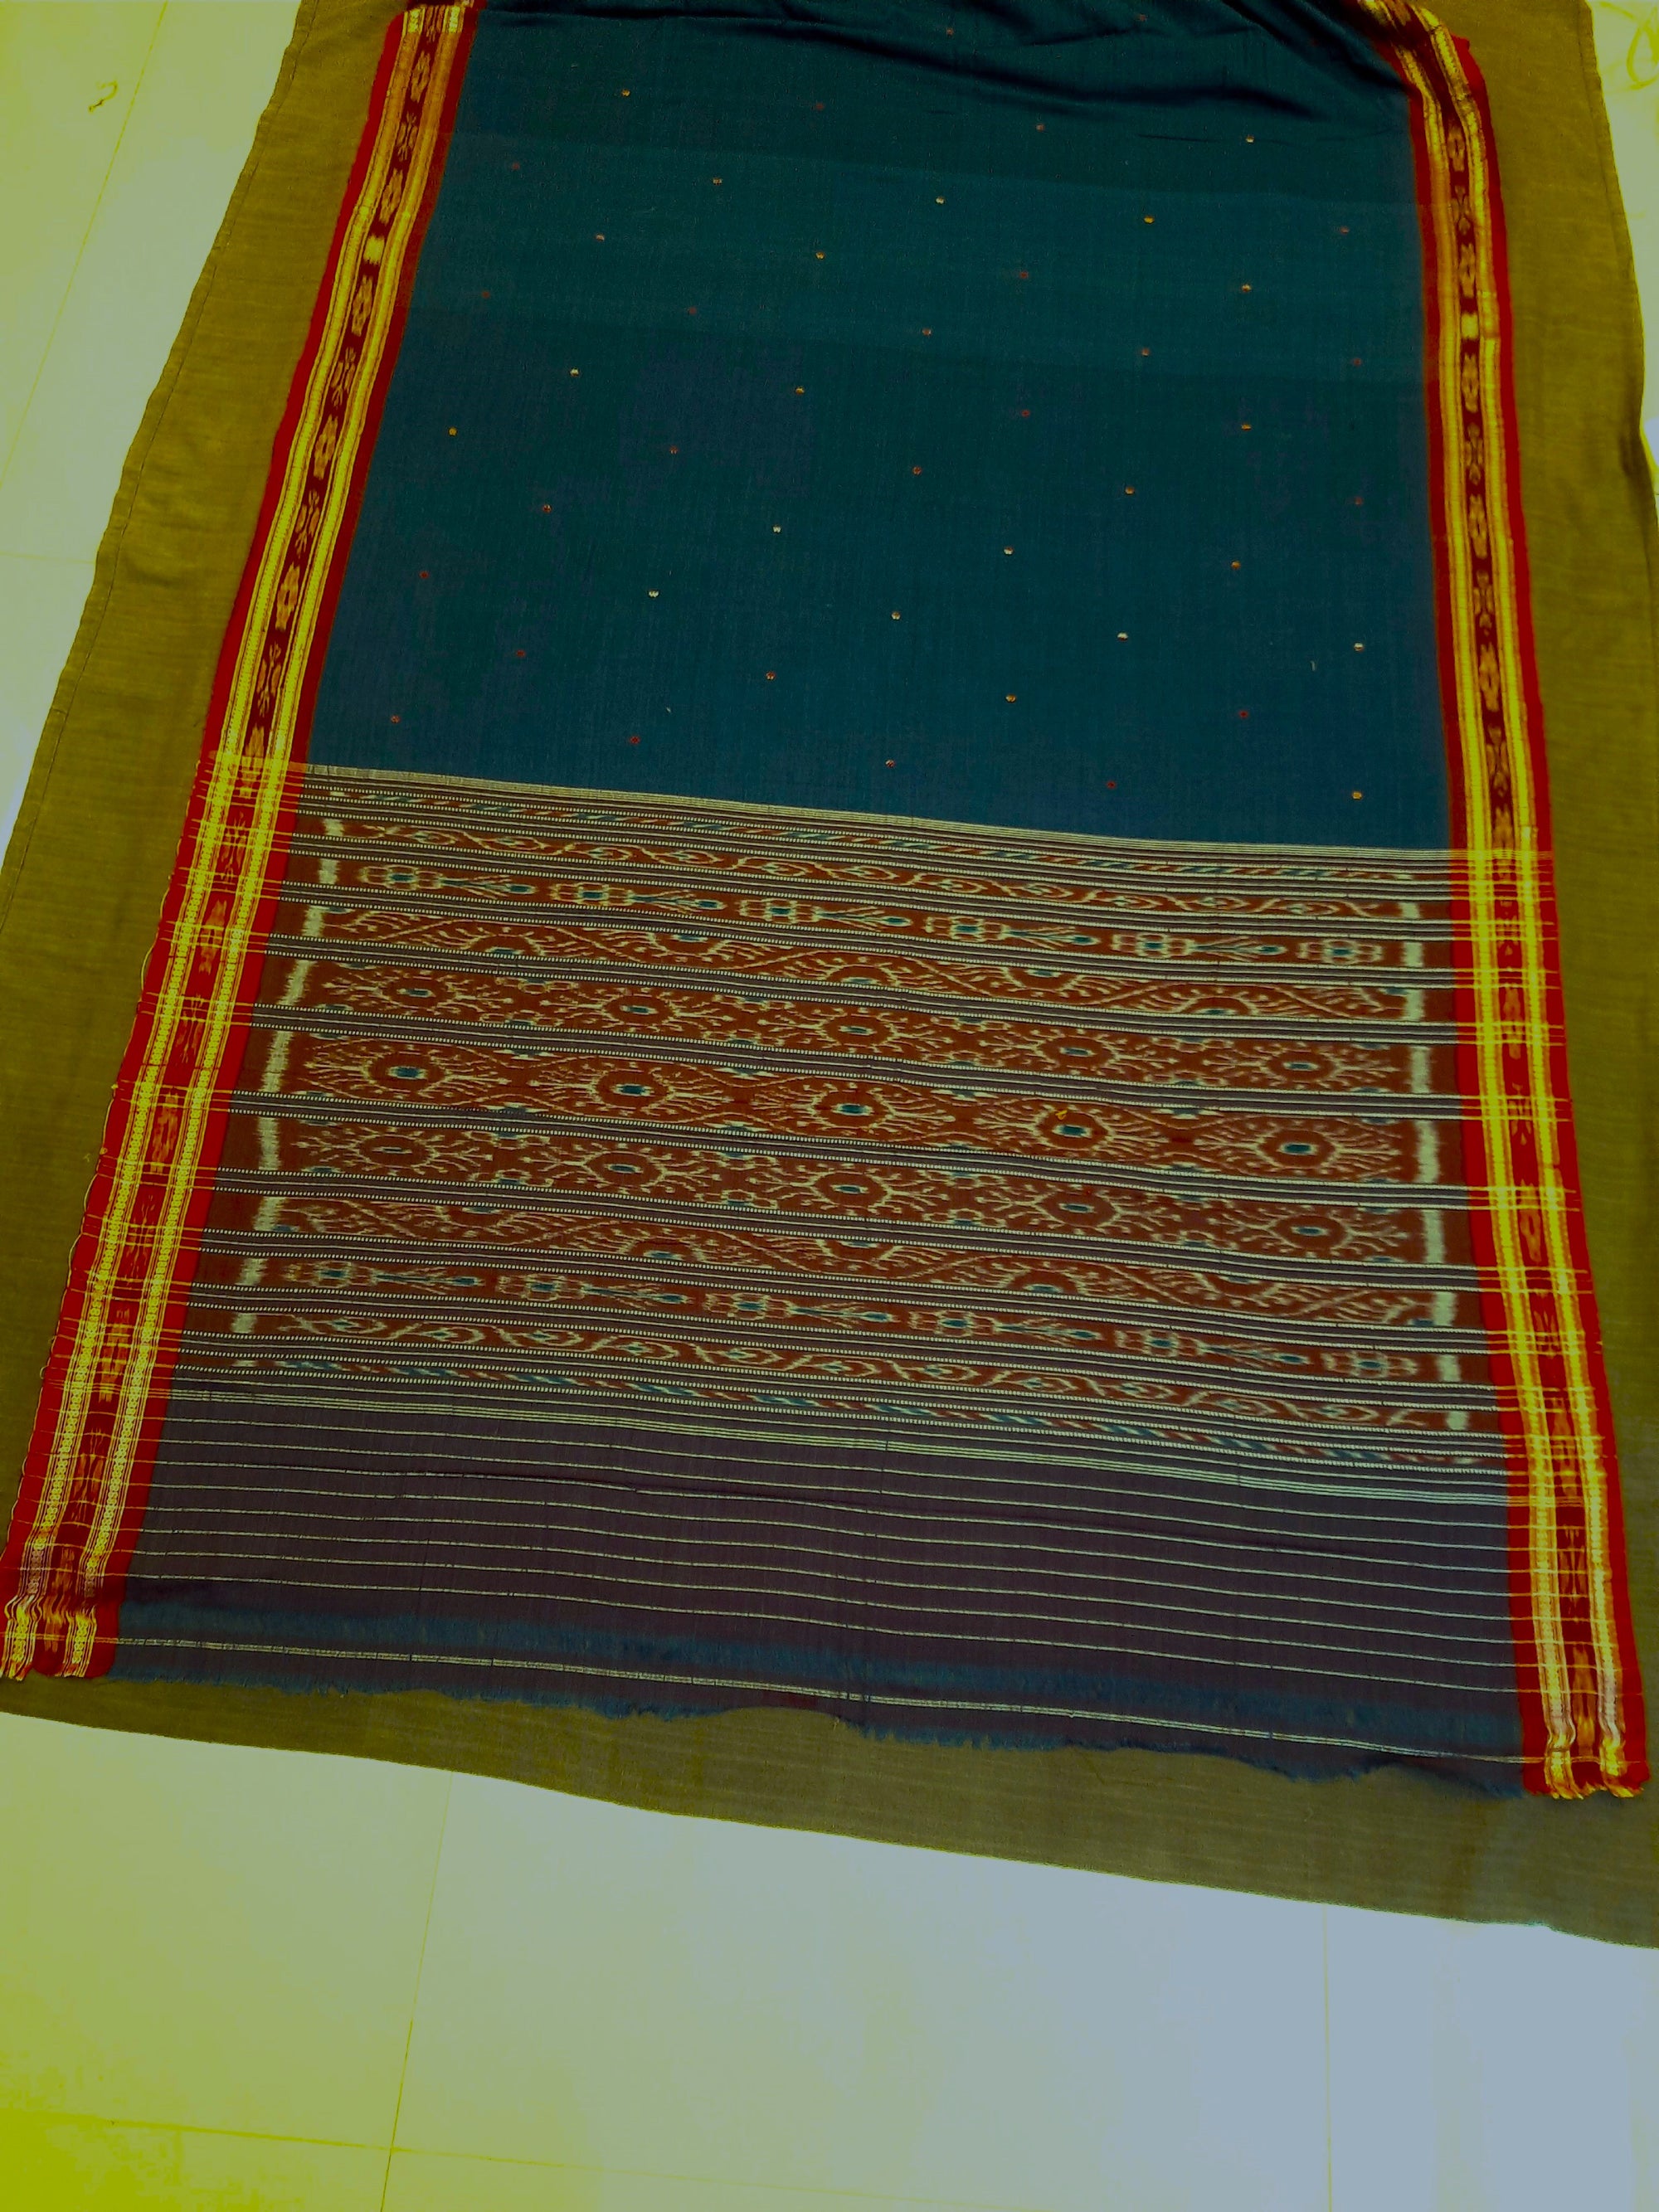 SeaGreen Cotton Odisha Ikat saree with mix match cotton ikat blouse